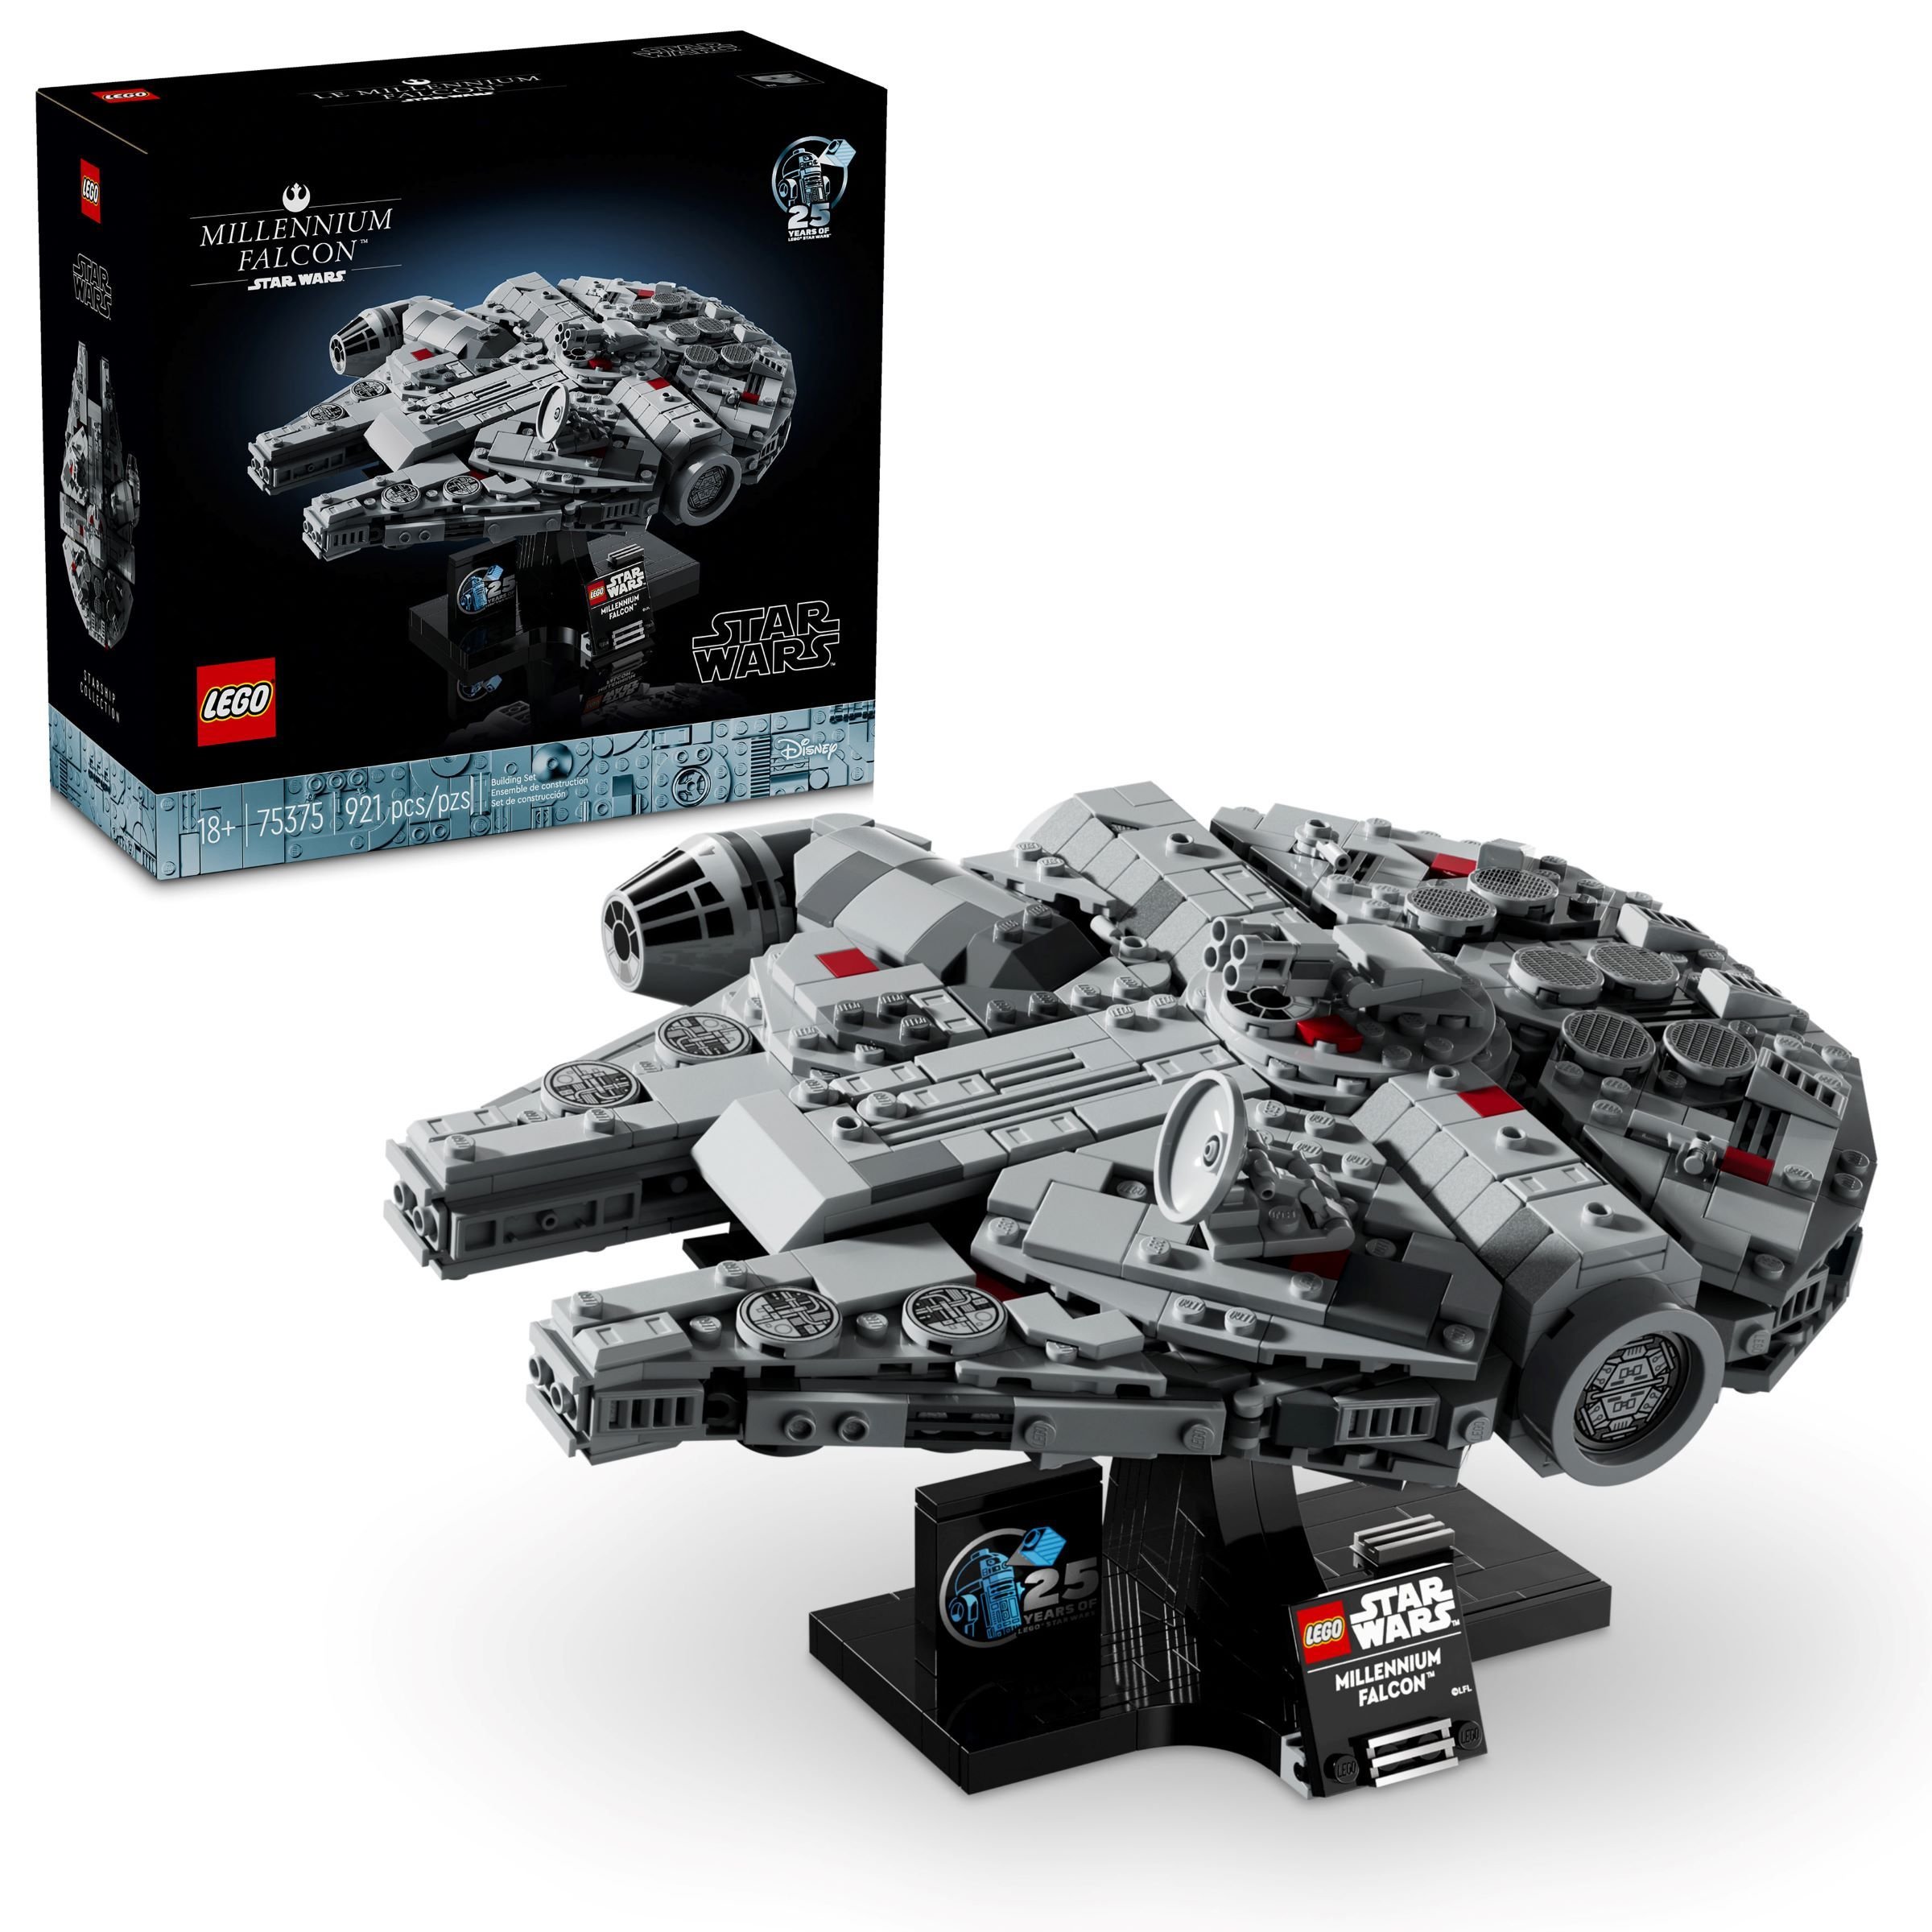 LEGO Star Wars 75375 Millennium Falcon™ LEGO_75375_alt1.jpg